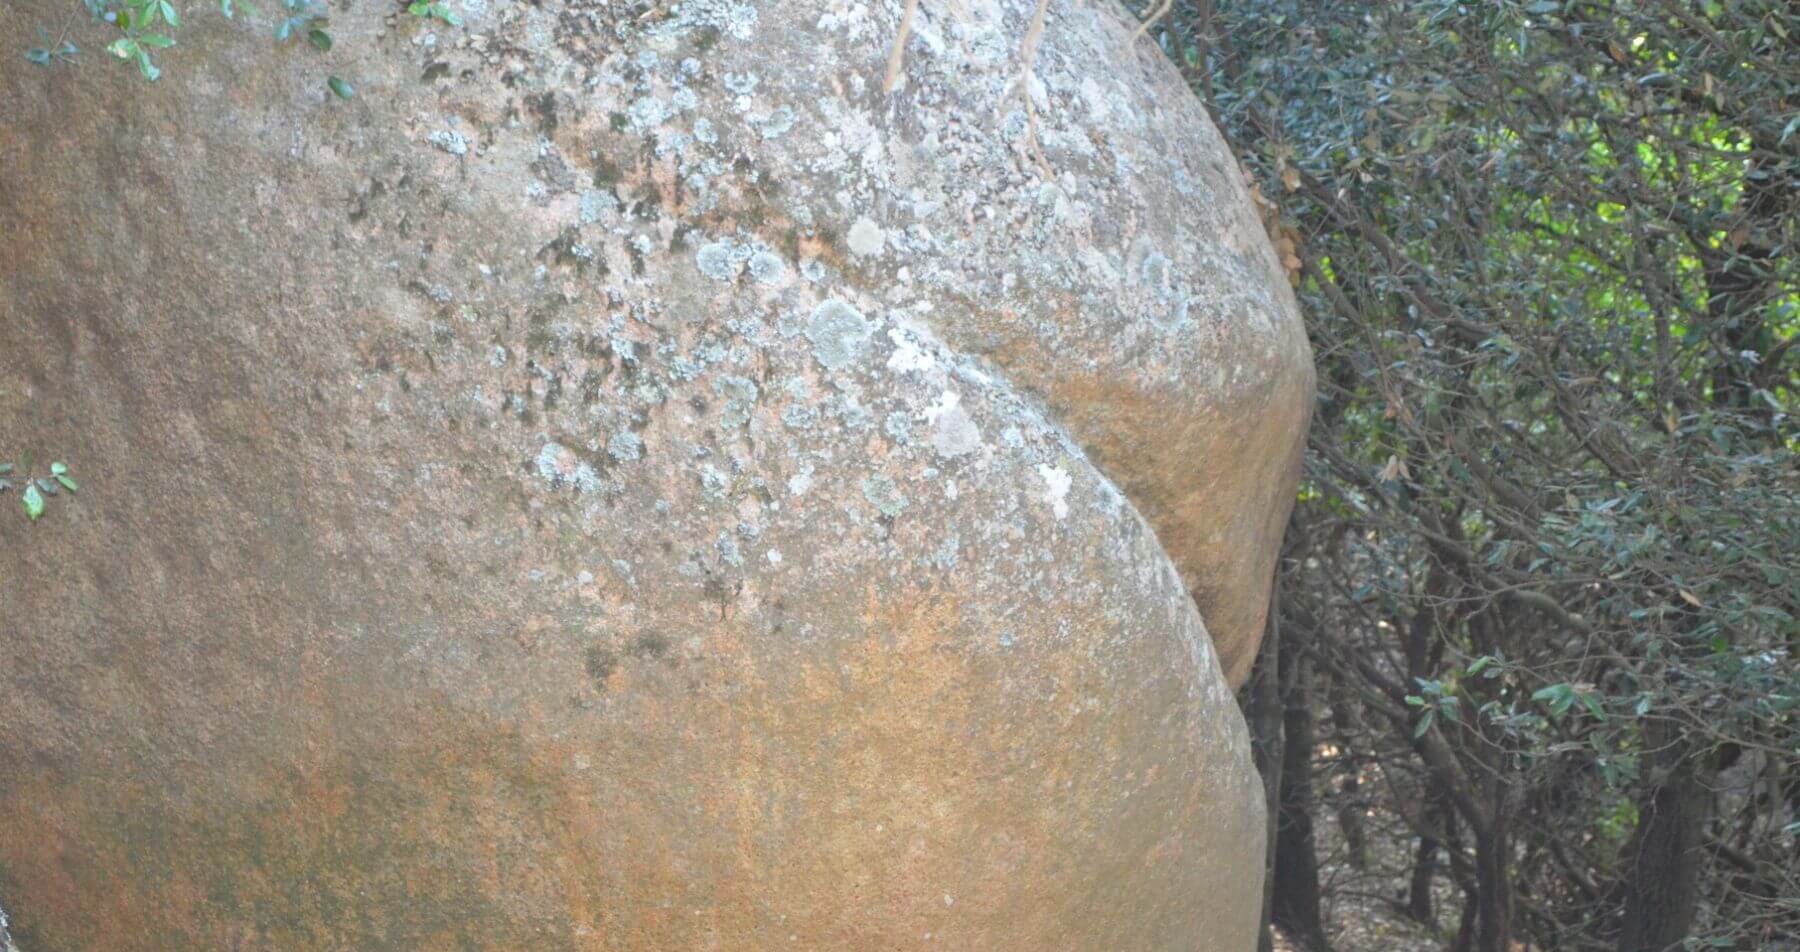 A rock shaped like a bottom